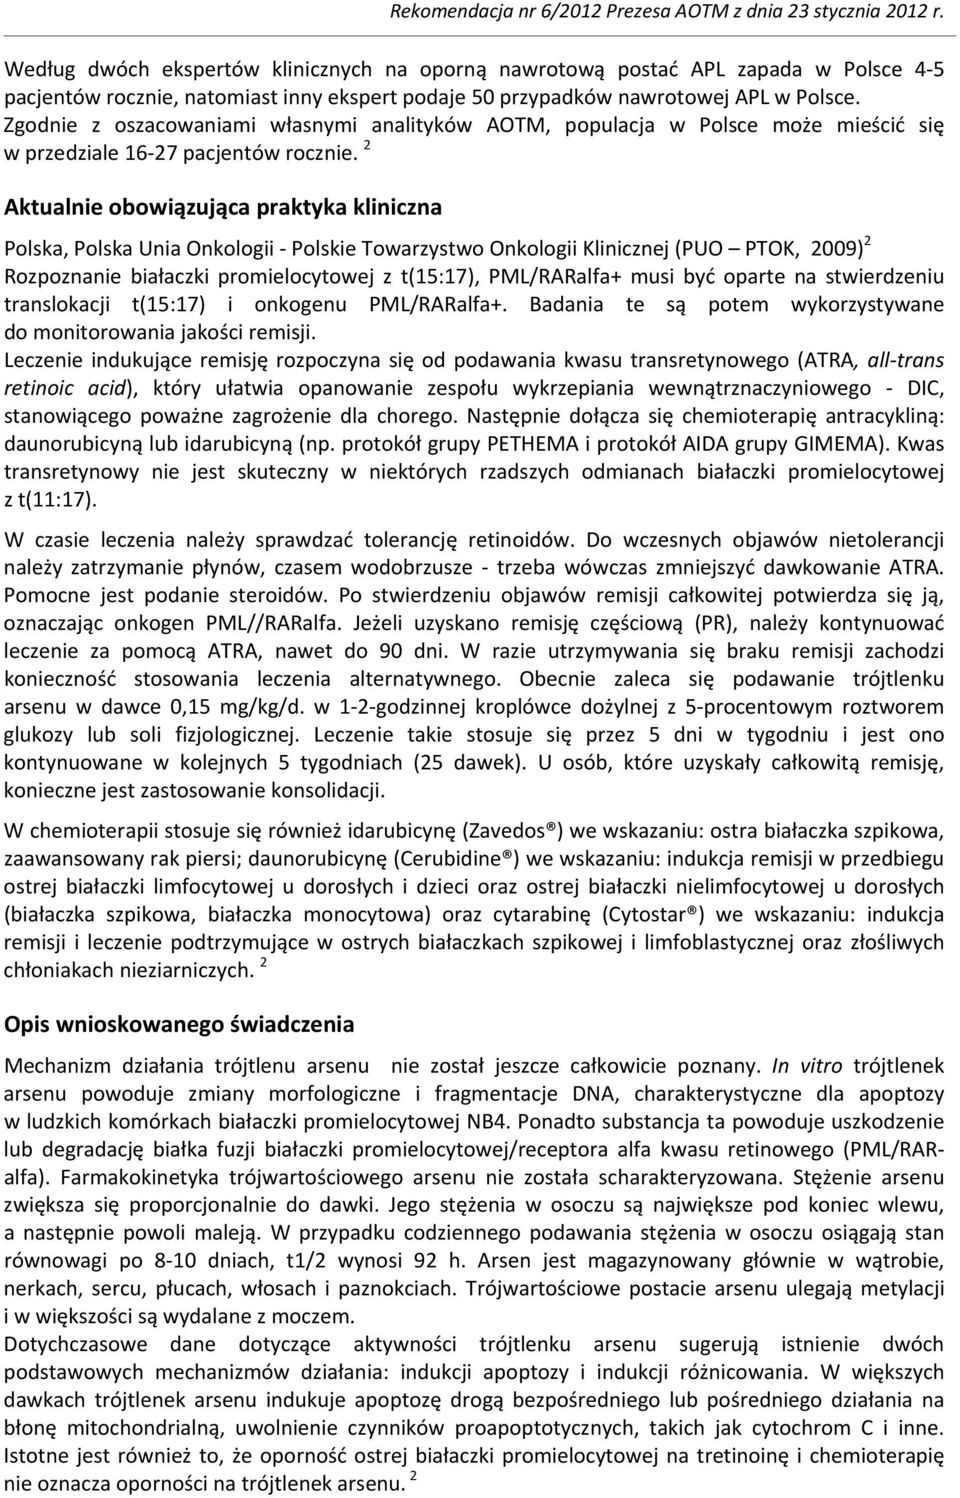 2 Aktualnie obowiązująca praktyka kliniczna Polska, Polska Unia Onkologii Polskie Towarzystwo Onkologii Klinicznej (PUO PTOK, 2009) 2 Rozpoznanie białaczki promielocytowej z t(15:17), PML/RARalfa+